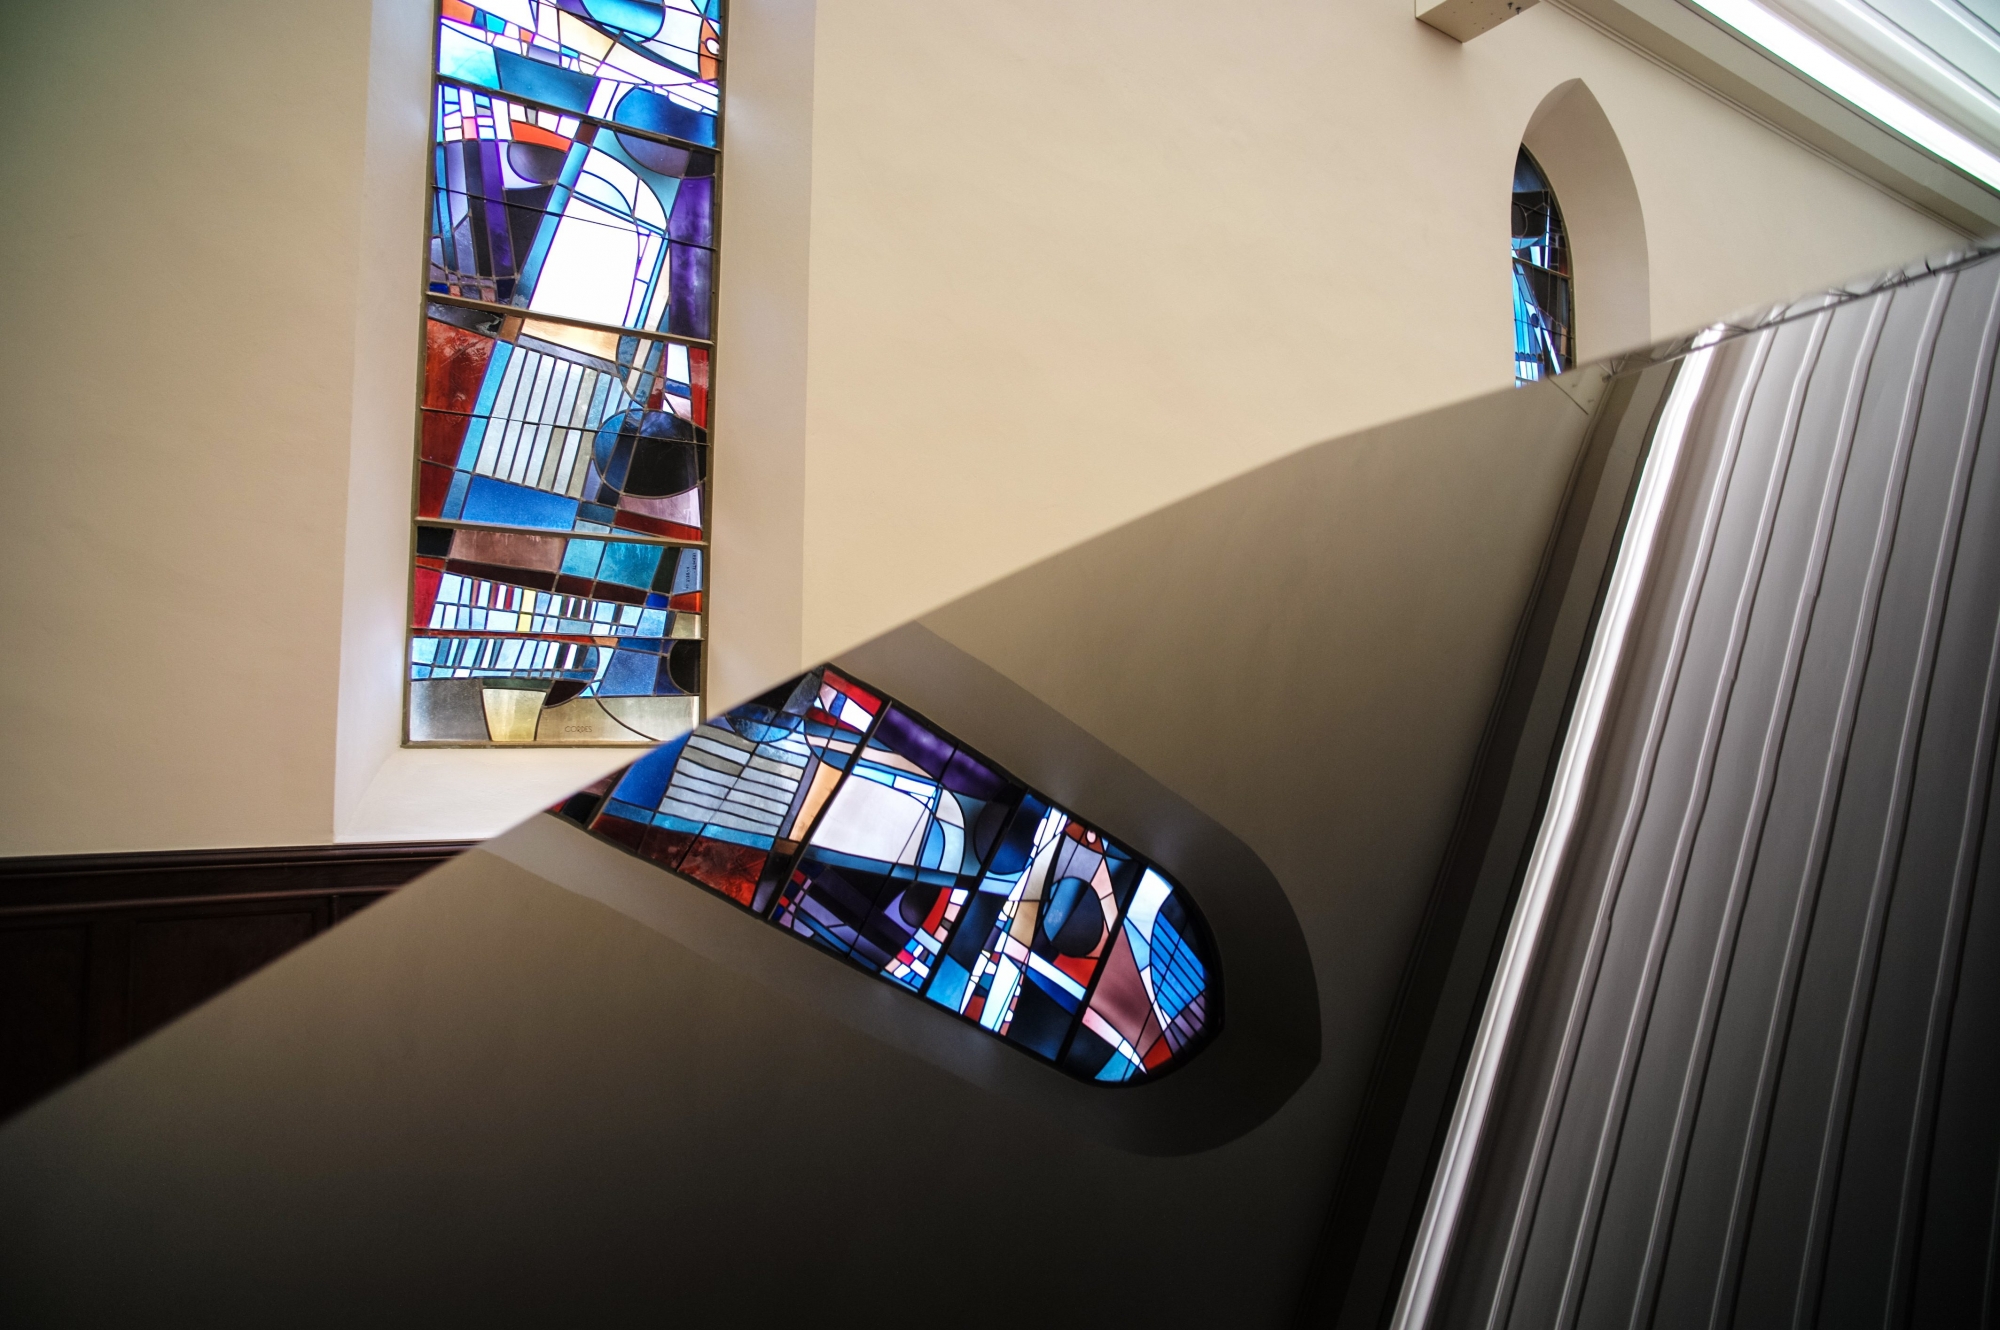 Salle de musique: la chapelle independante renovee avec les vitraux de Lermite

COUVET 18.09.2013
PHOTO: CHRISTIAN GALLEY